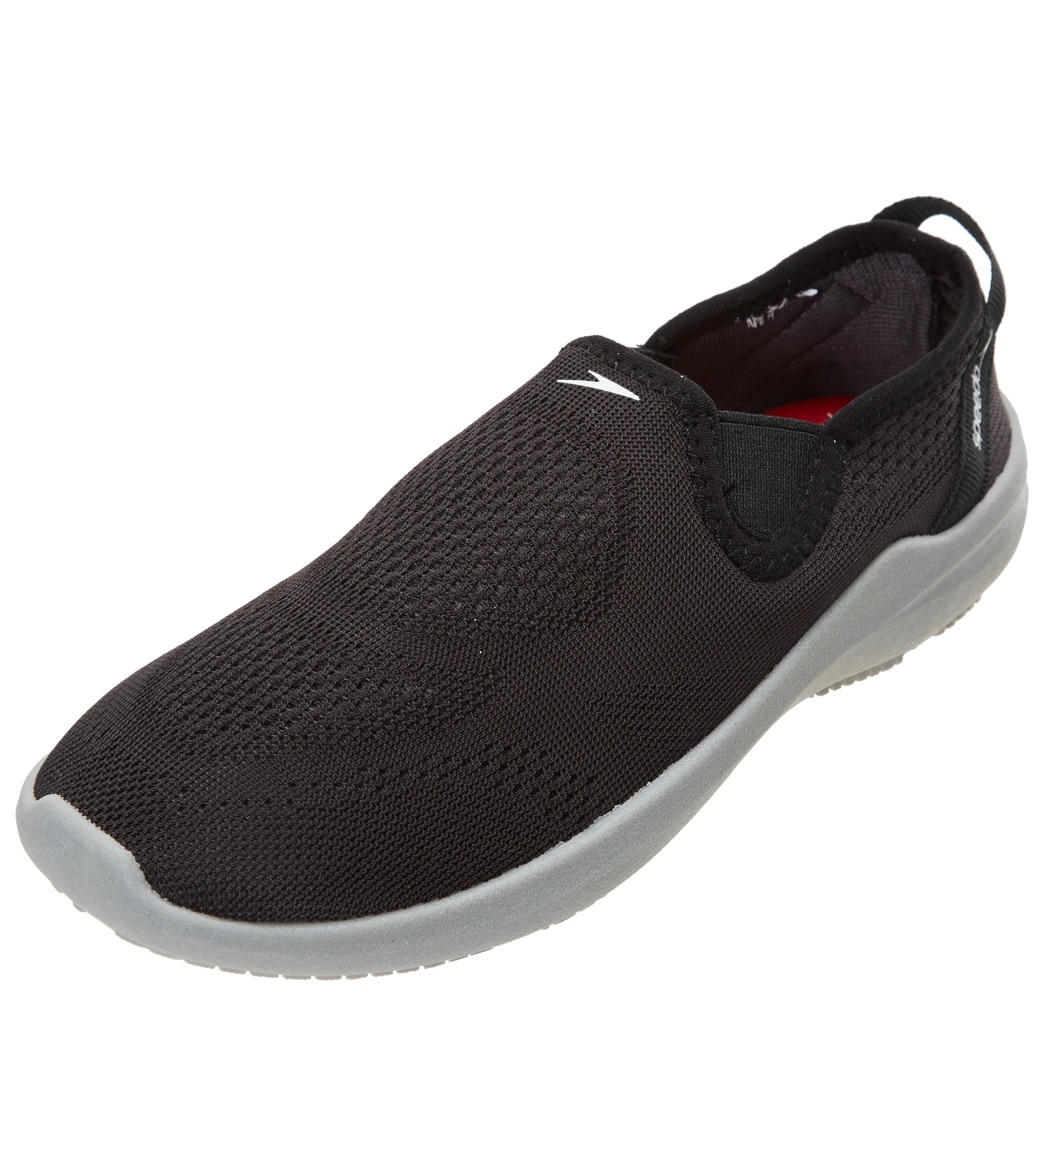 Speedo Kids' Surfwalker Pro Mesh Water Shoe - Black/Grey 11 - Swimoutlet.com